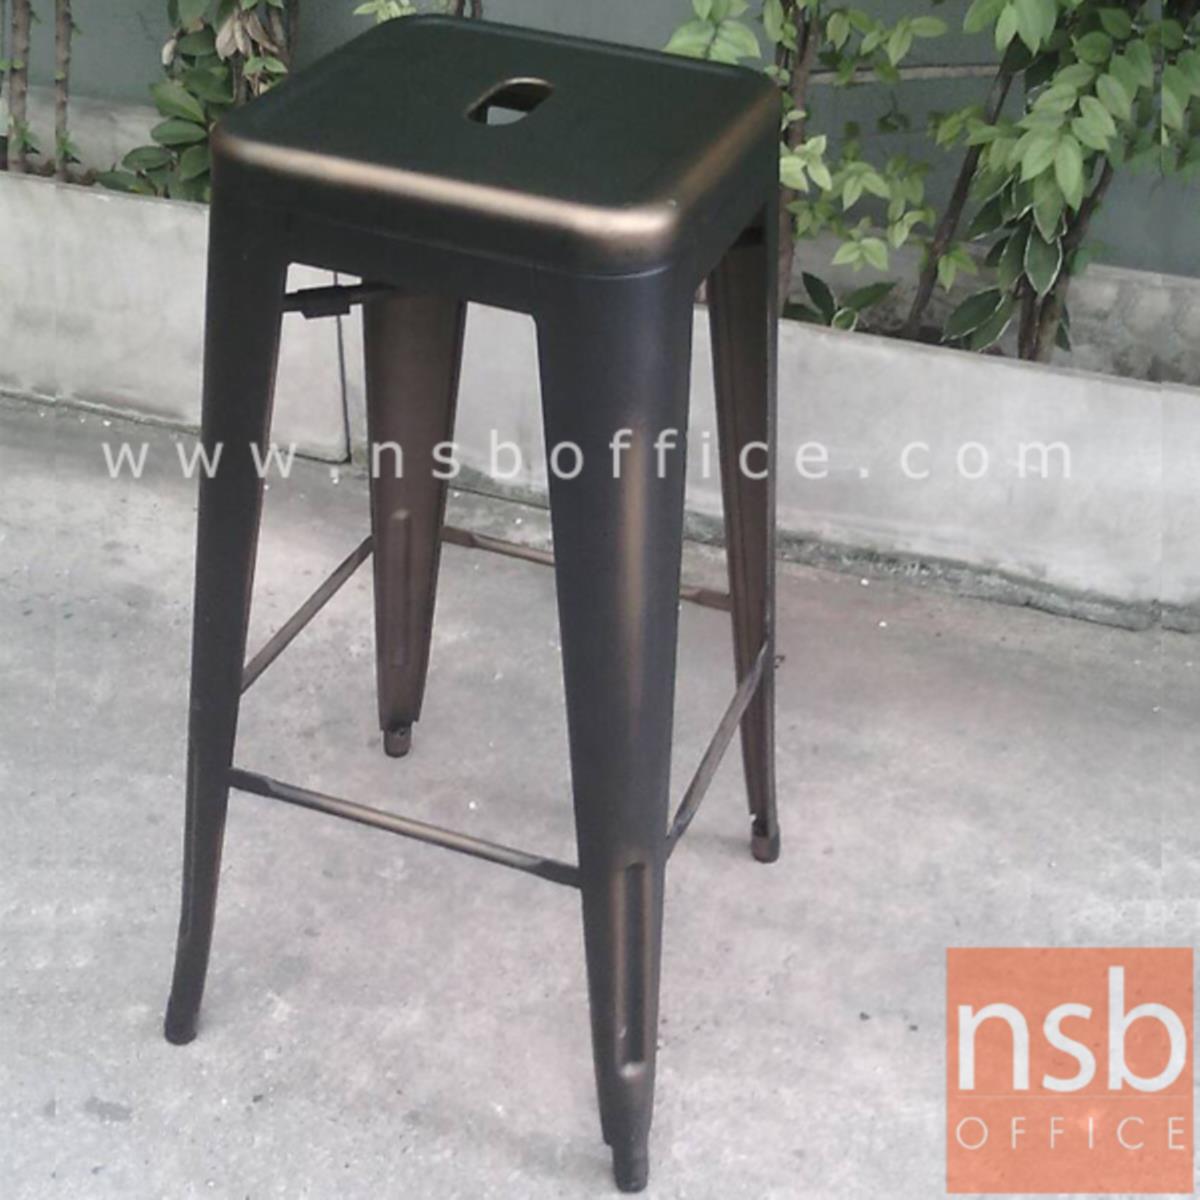 เก้าอี้บาร์สูงเหล็ก รุ่น NP31129 ขนาด 30W cm. โครงเหล็กสีทองแดง